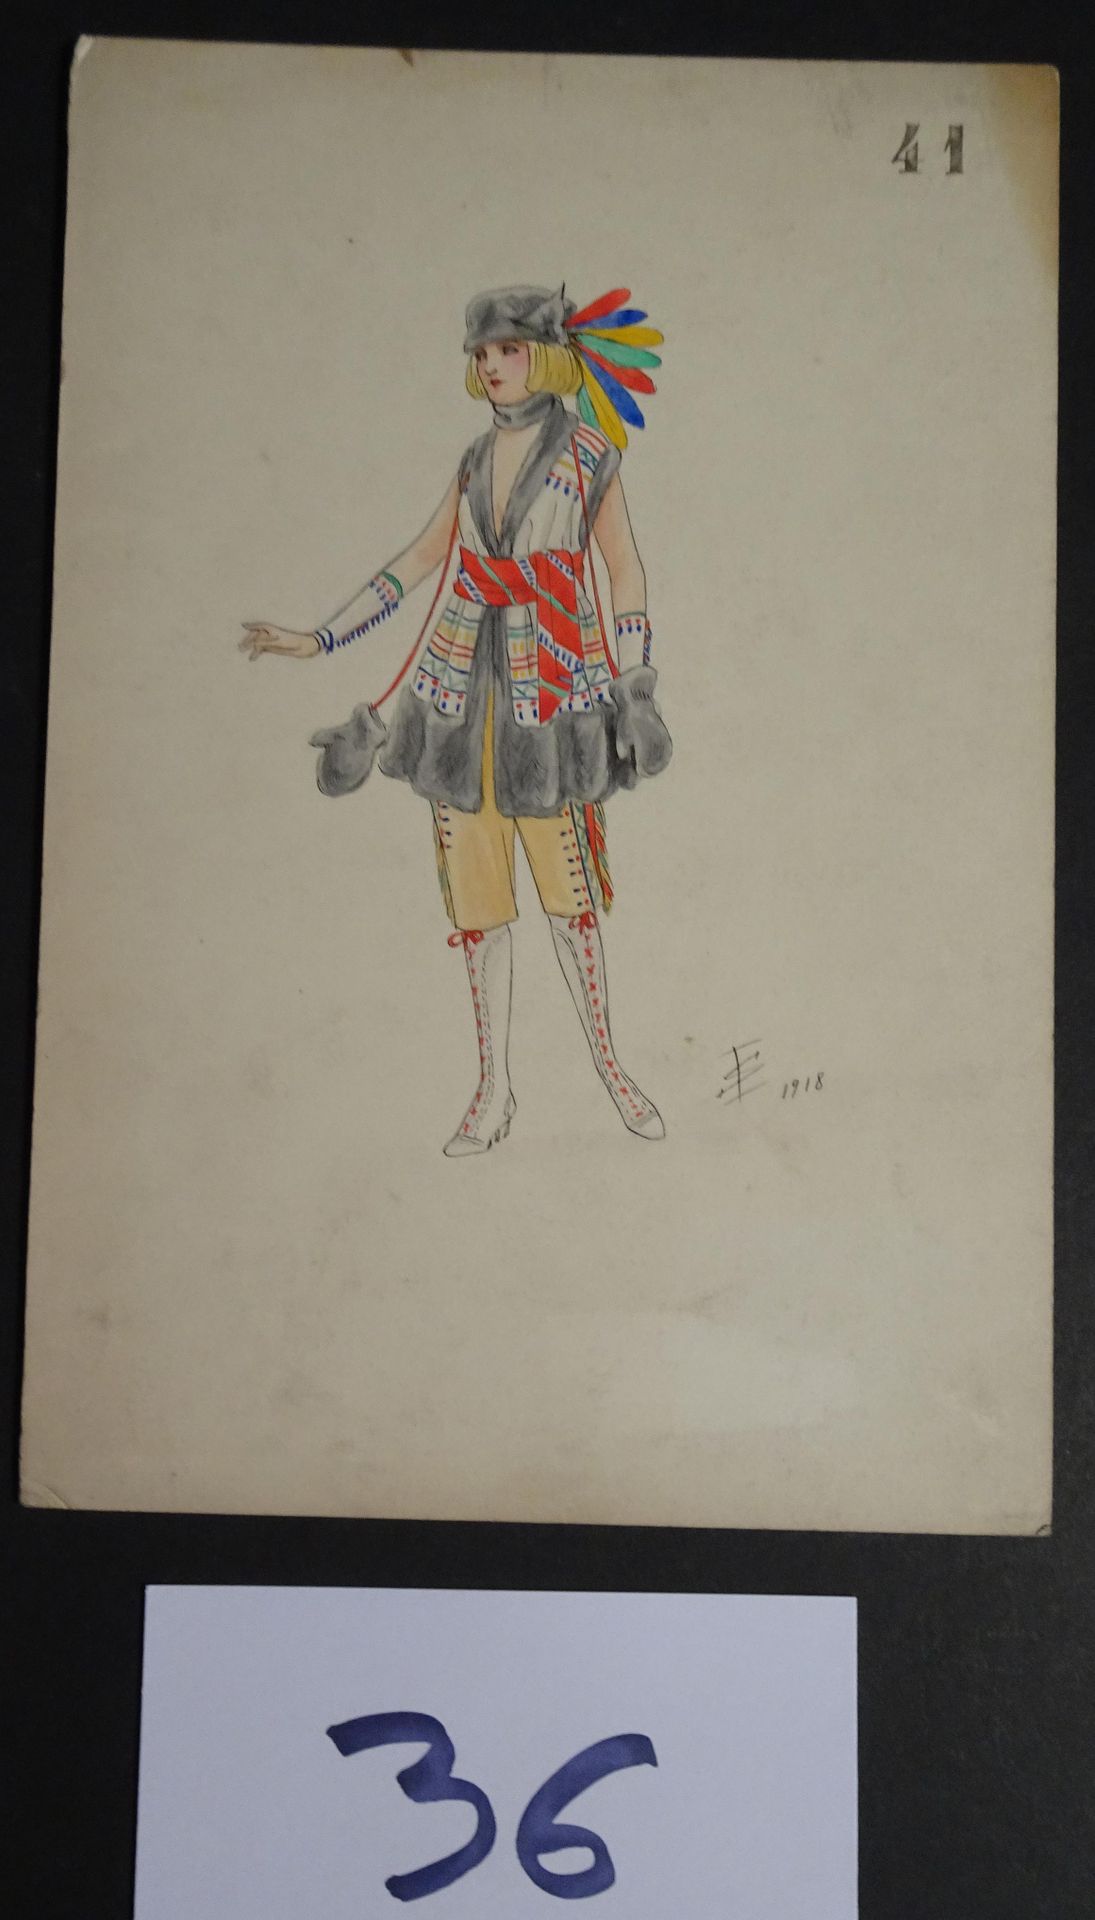 SOKOLOFF SOKOLOFF IGOR (principios del siglo X) 

"Mujer con turbante de plumas"&hellip;